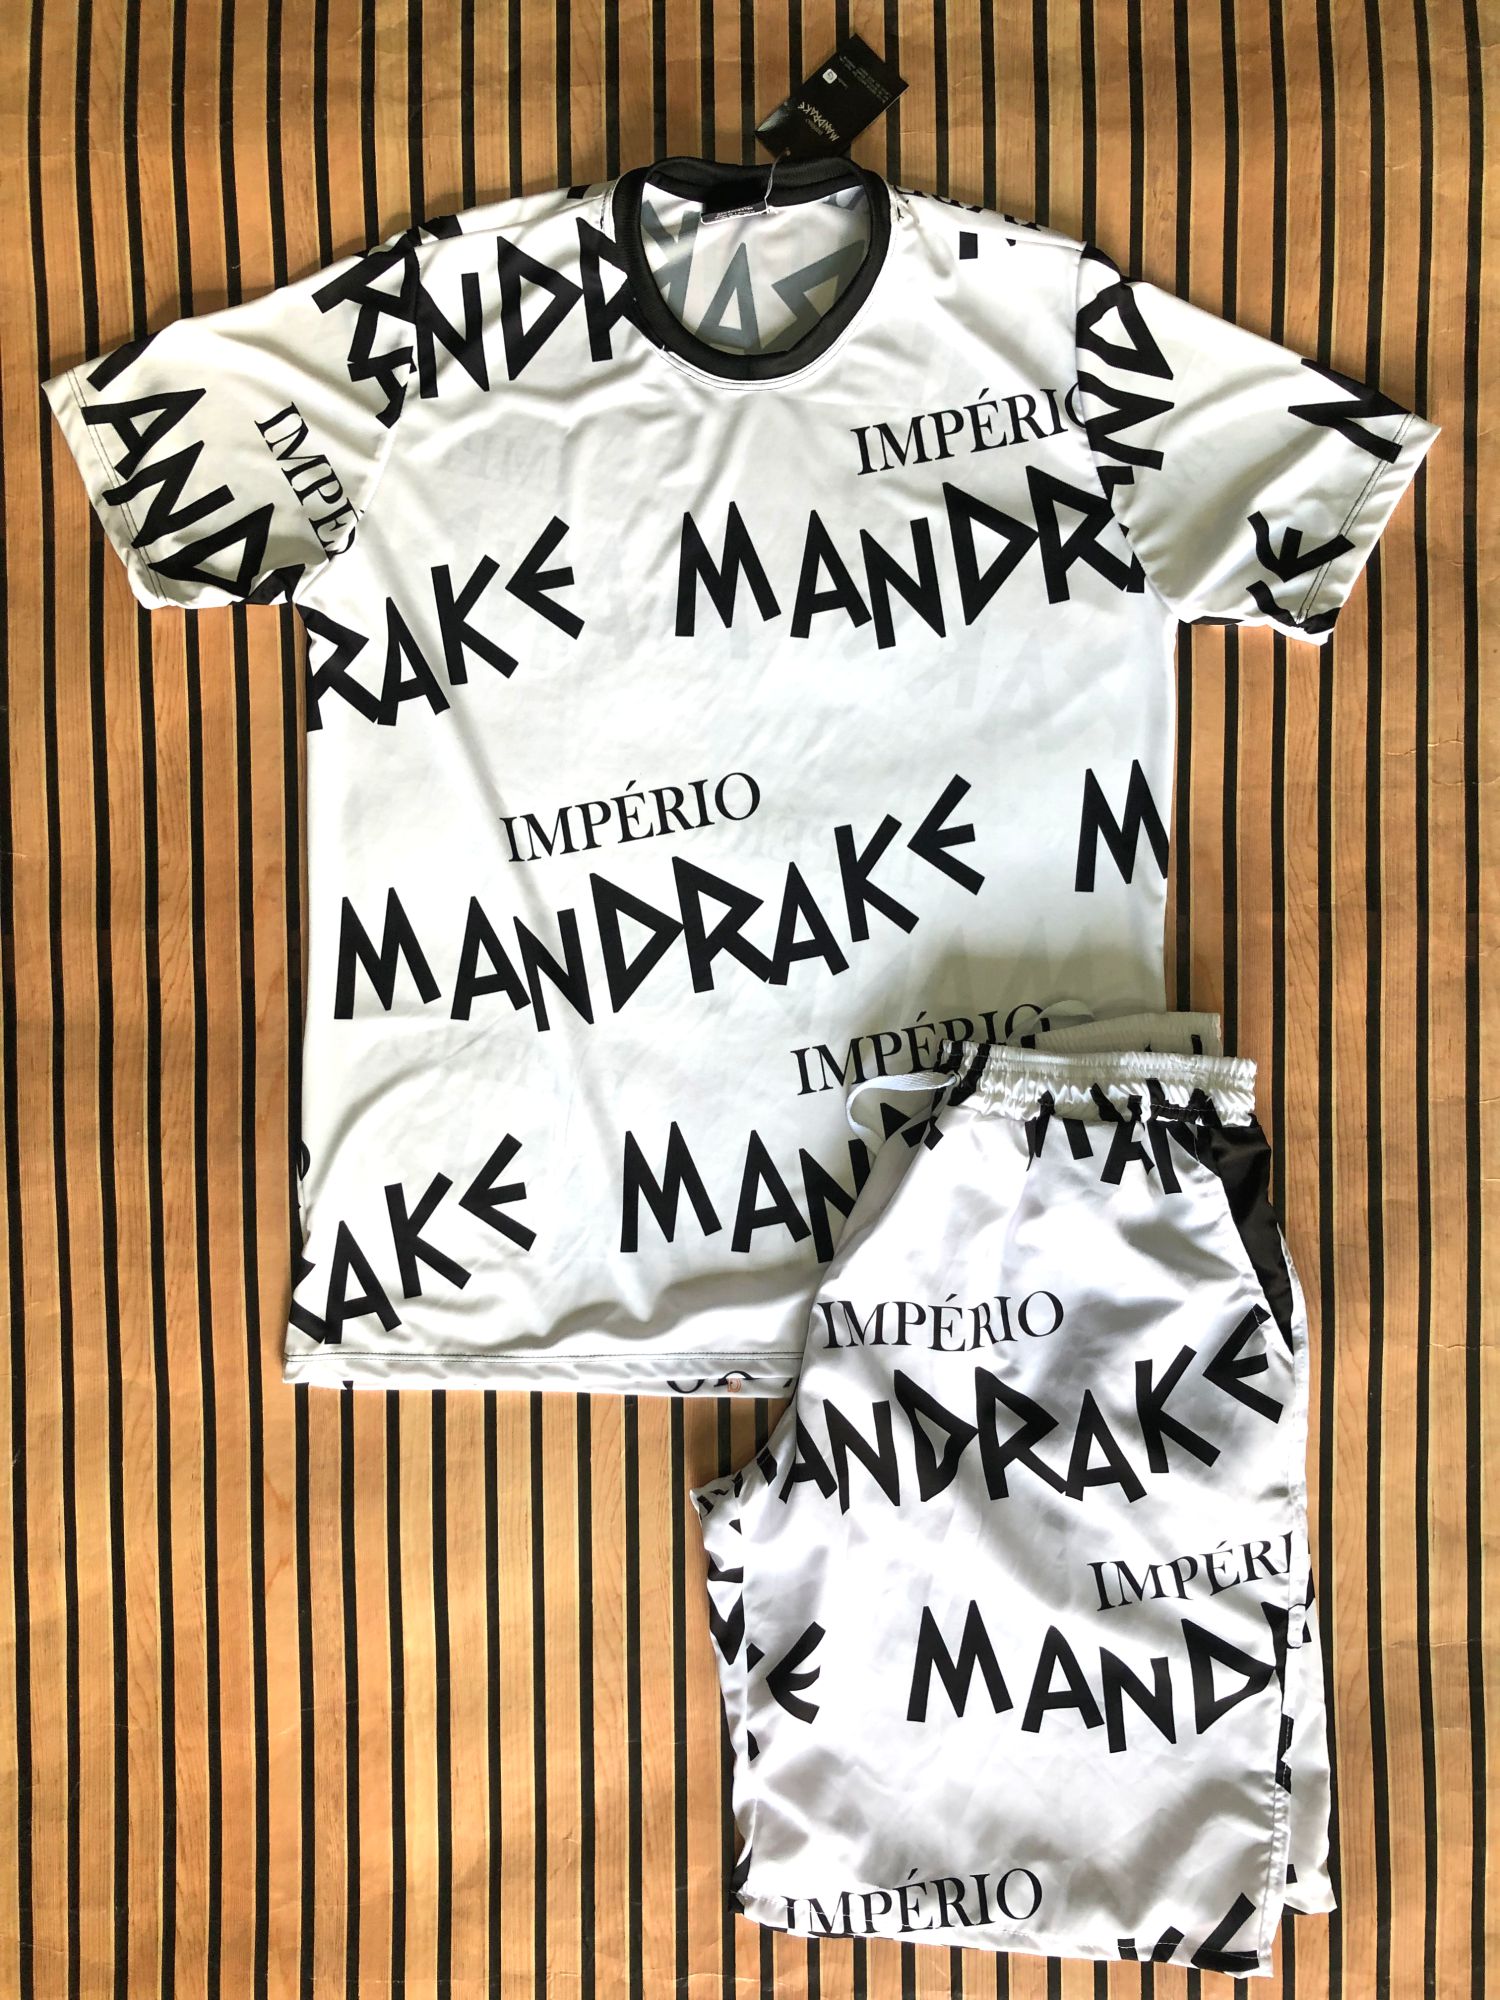 Kit Masculino Império Mandrake Chave de Quebrada Favela Venceu - Império  Mandrake